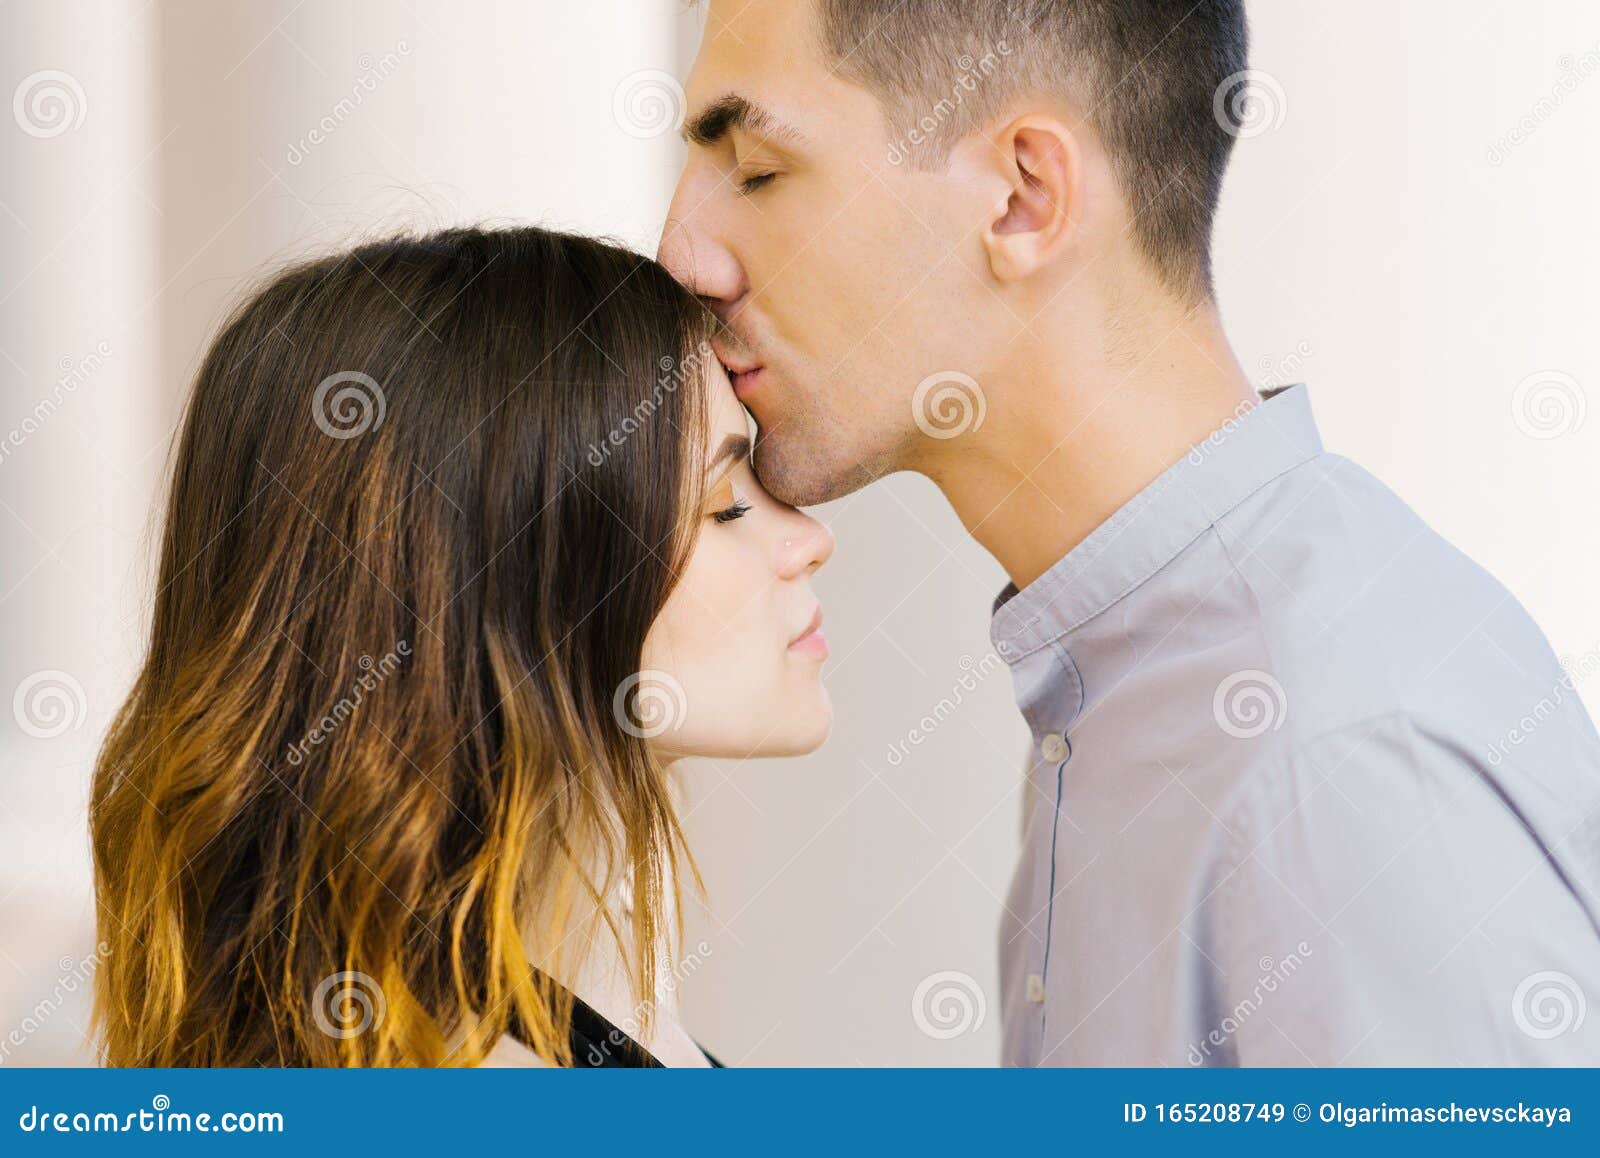 Поцелуй в лоб что означает от мужчины